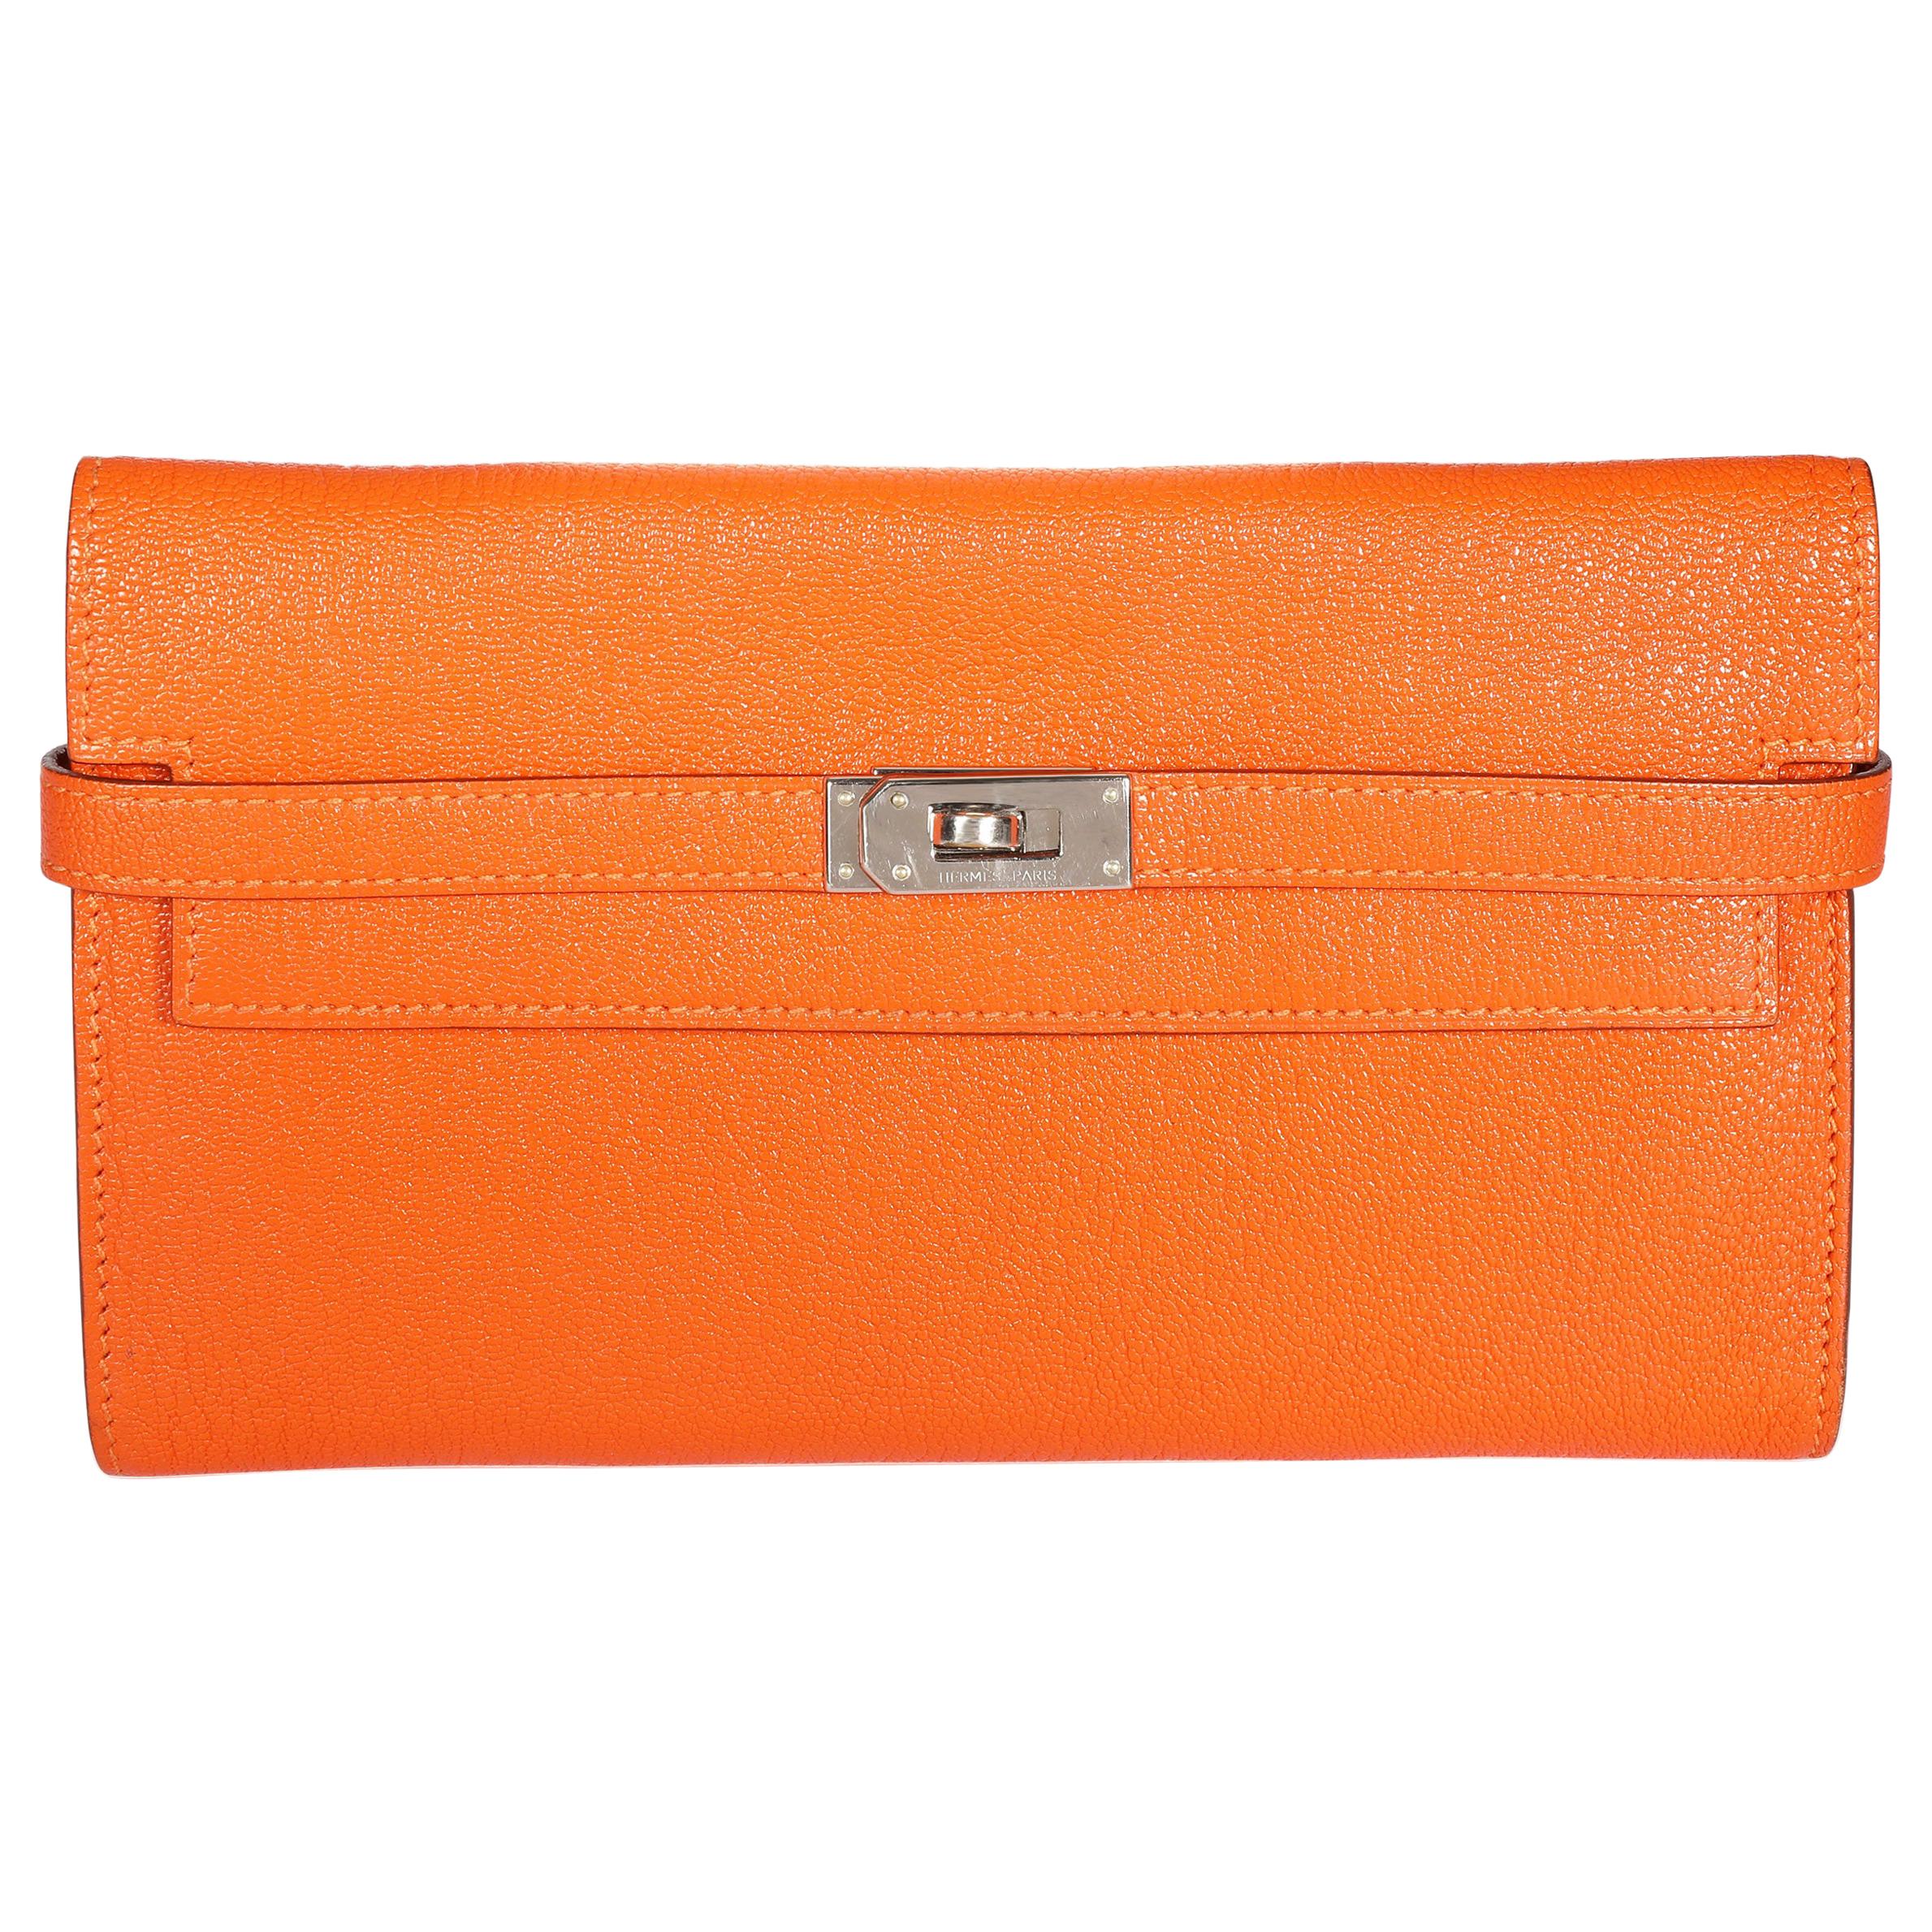 Hermès Orange Chévre Mysore Kelly Wallet with Palladium Hardware